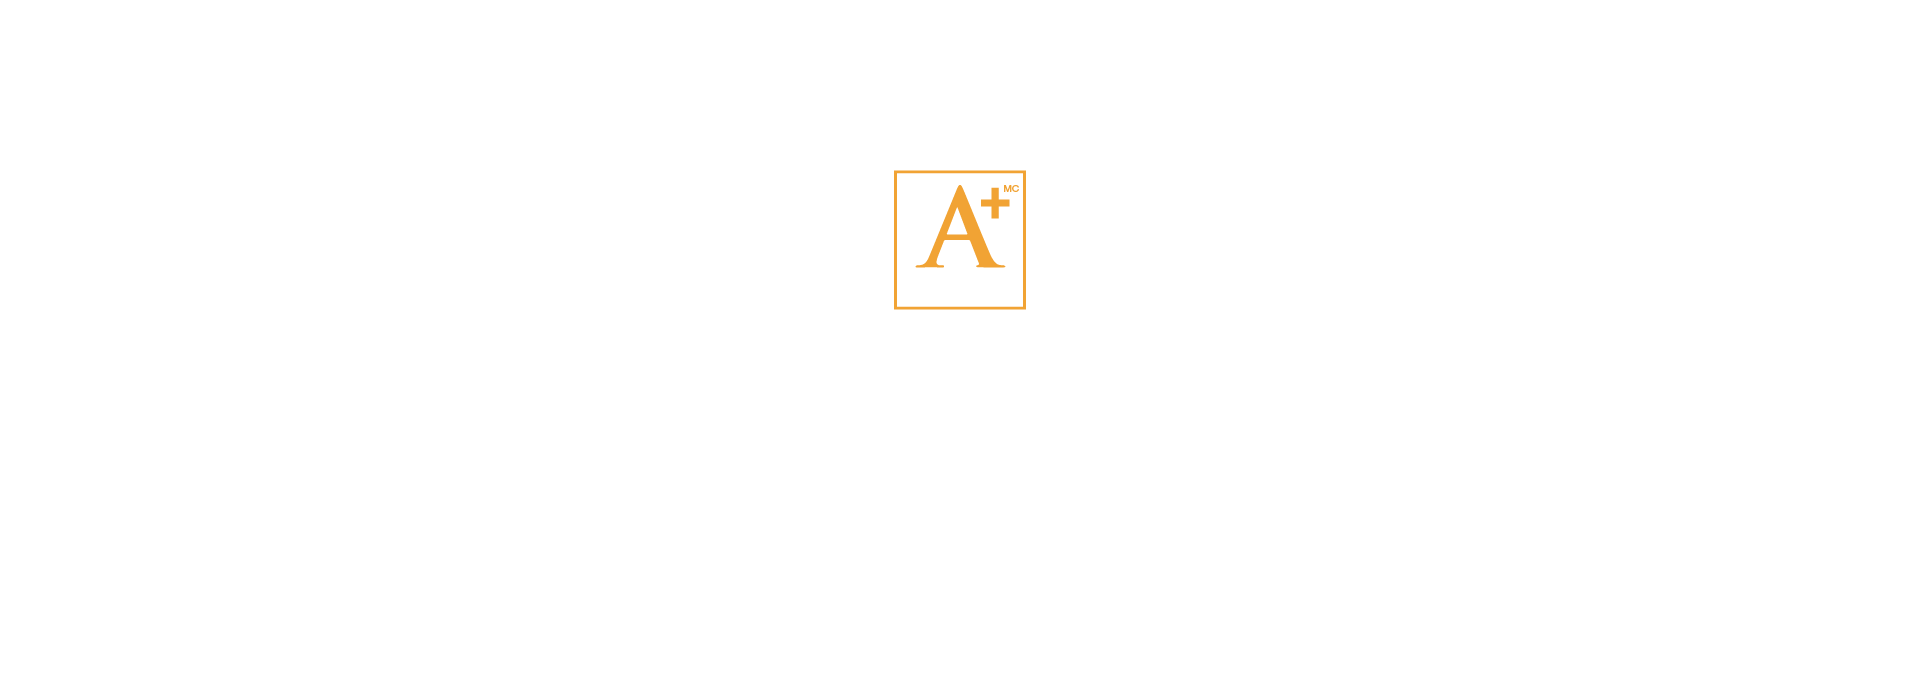 2014 Awards